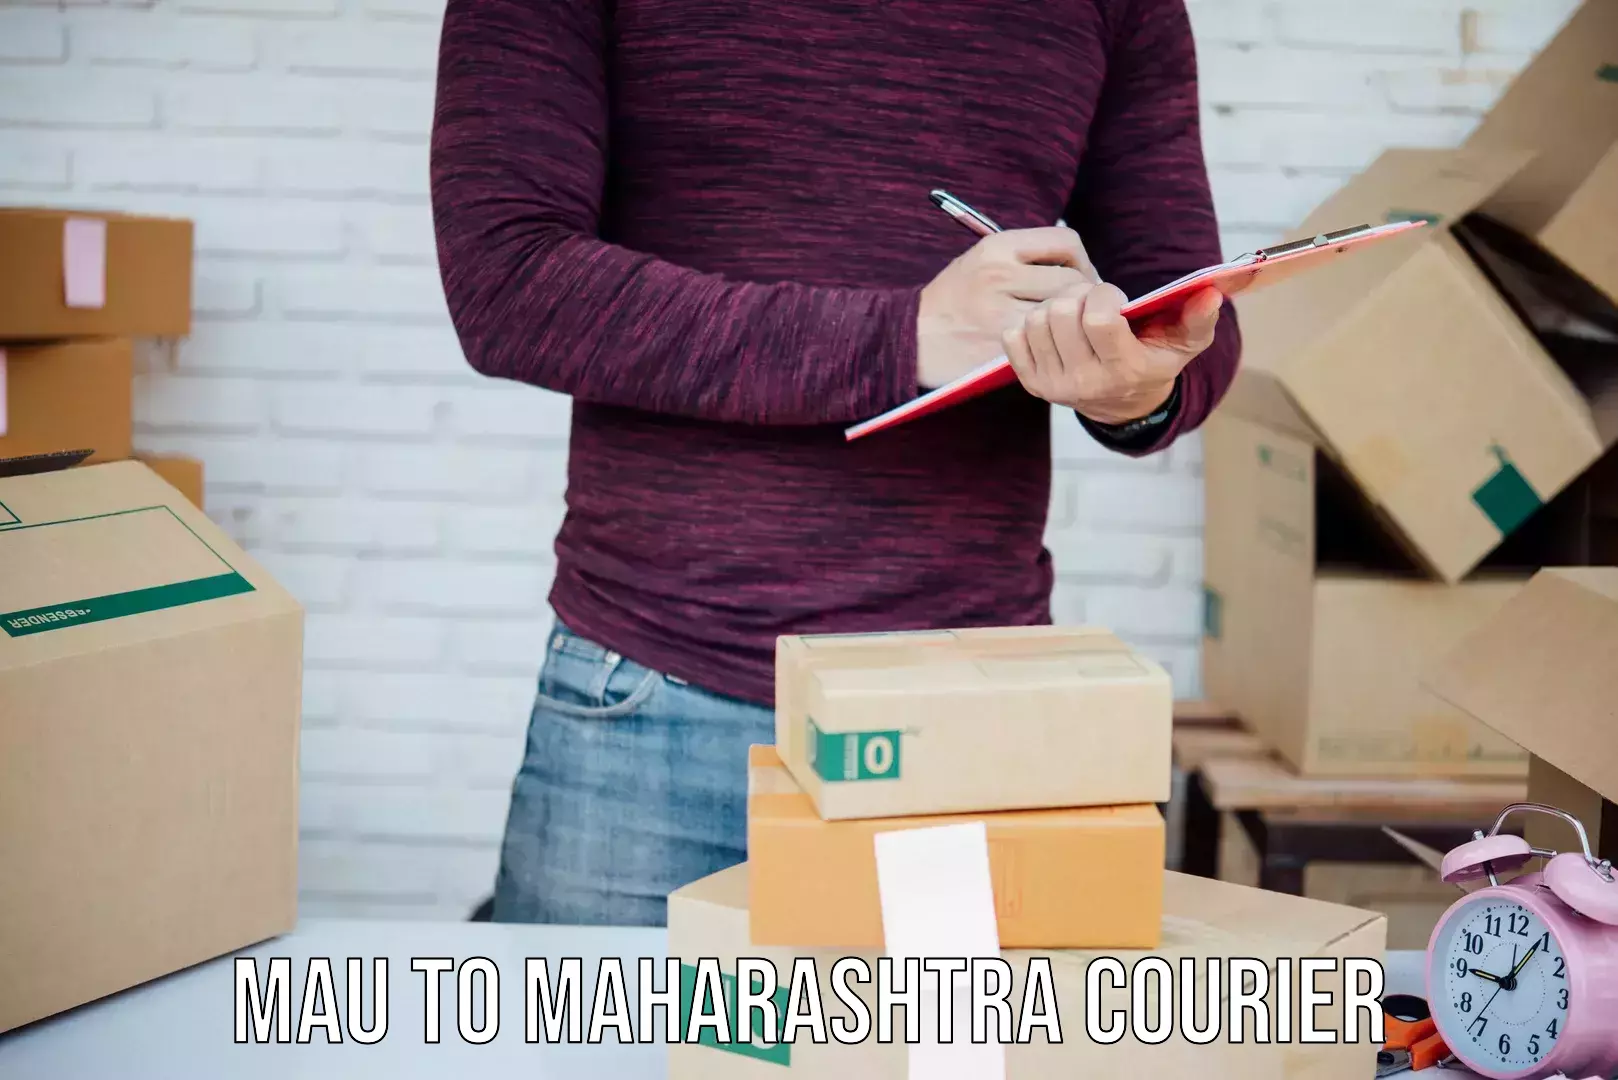 Customer-focused courier Mau to Maharashtra